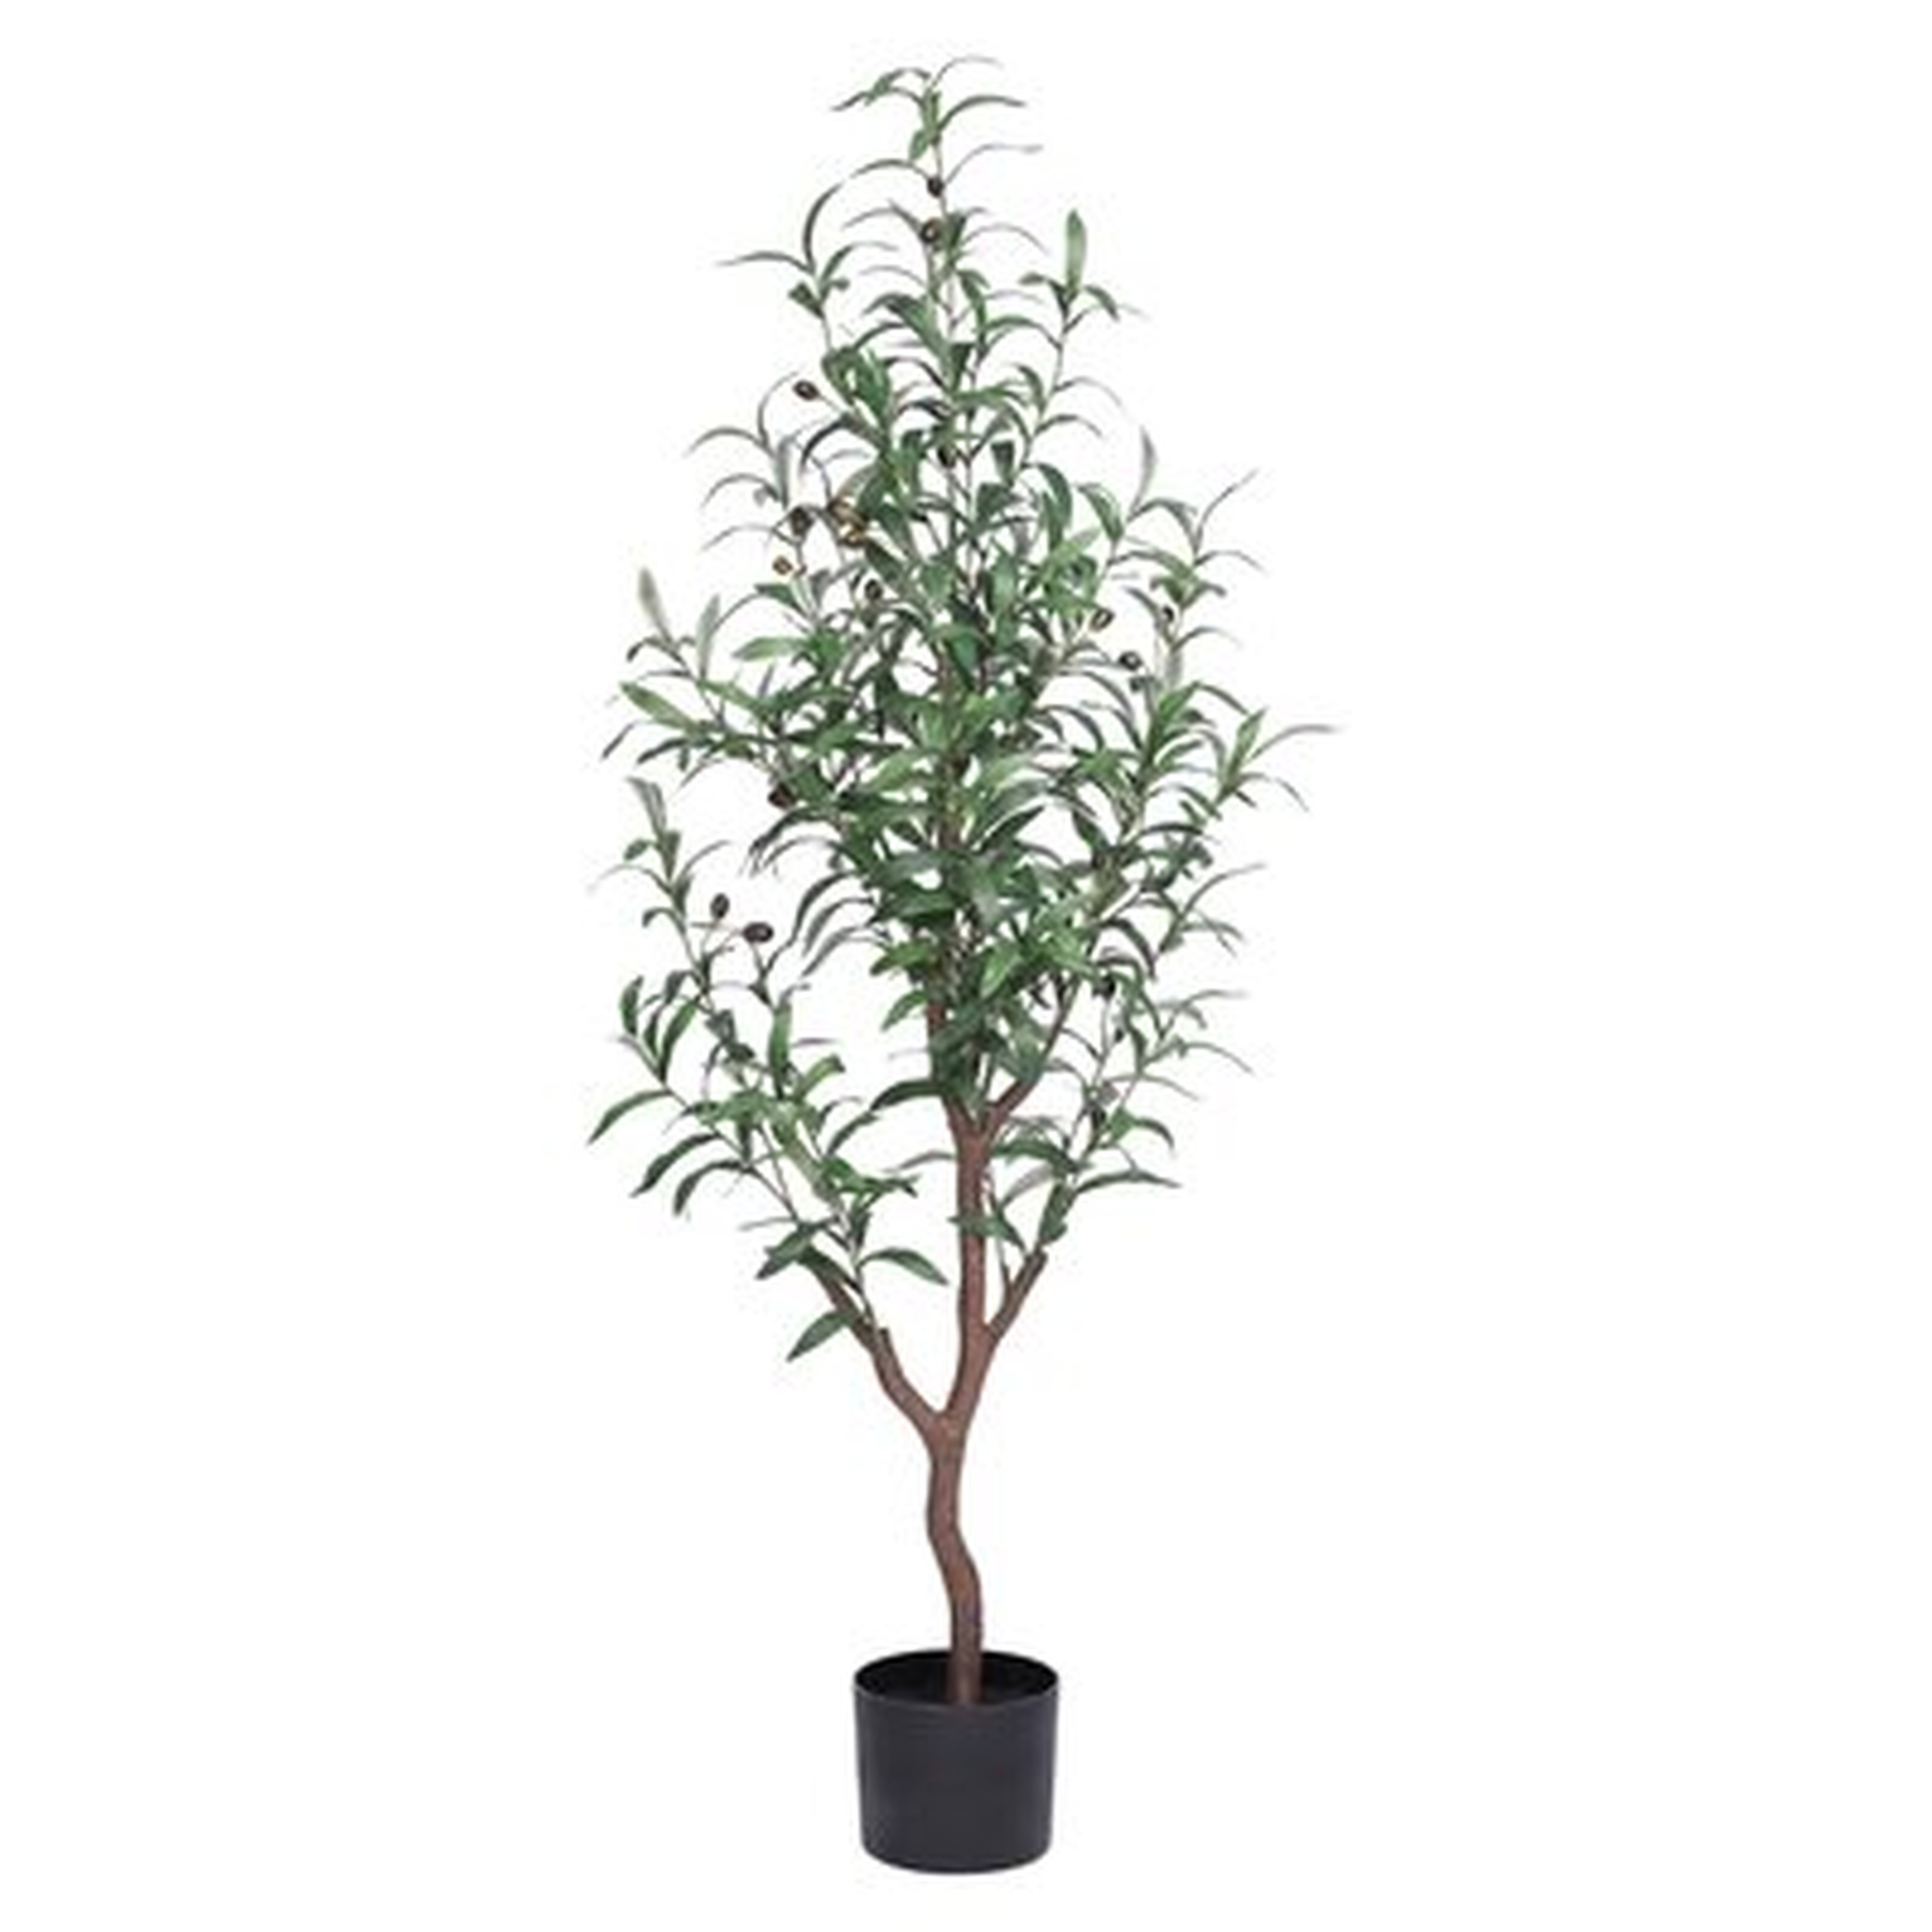 Artificial Olive Tree In Pot - Wayfair